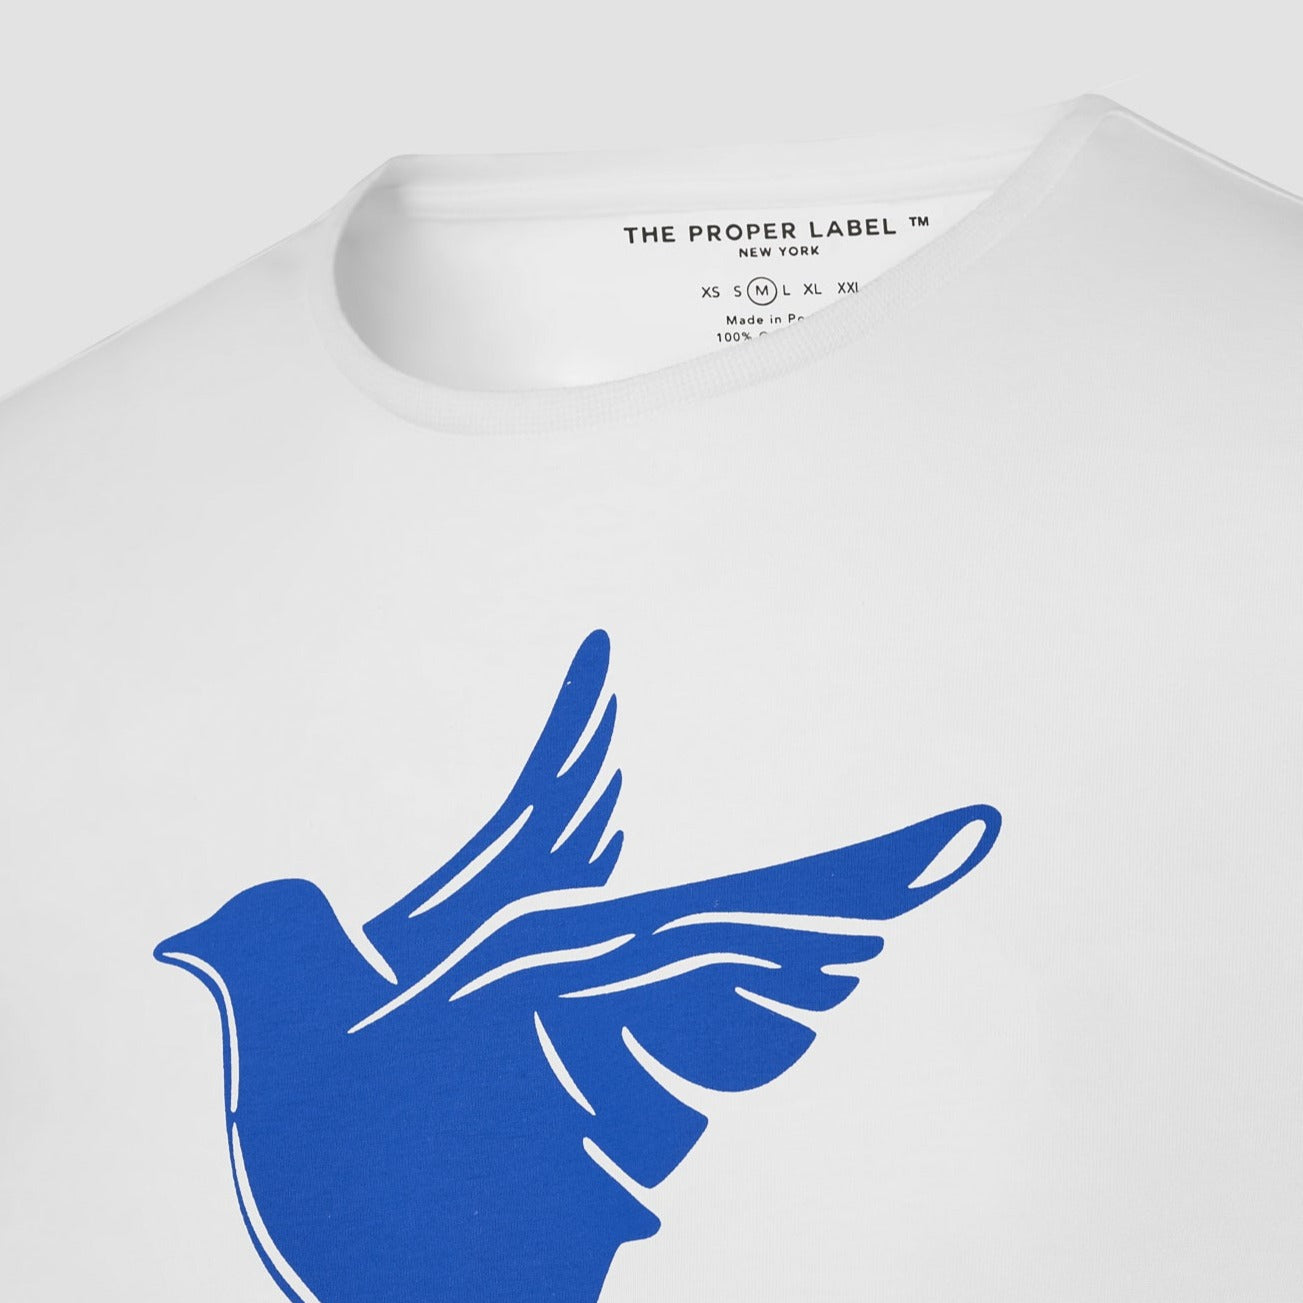 TPL ® Tee Shirt [Large Blue Dove Print] - The Proper Label ®